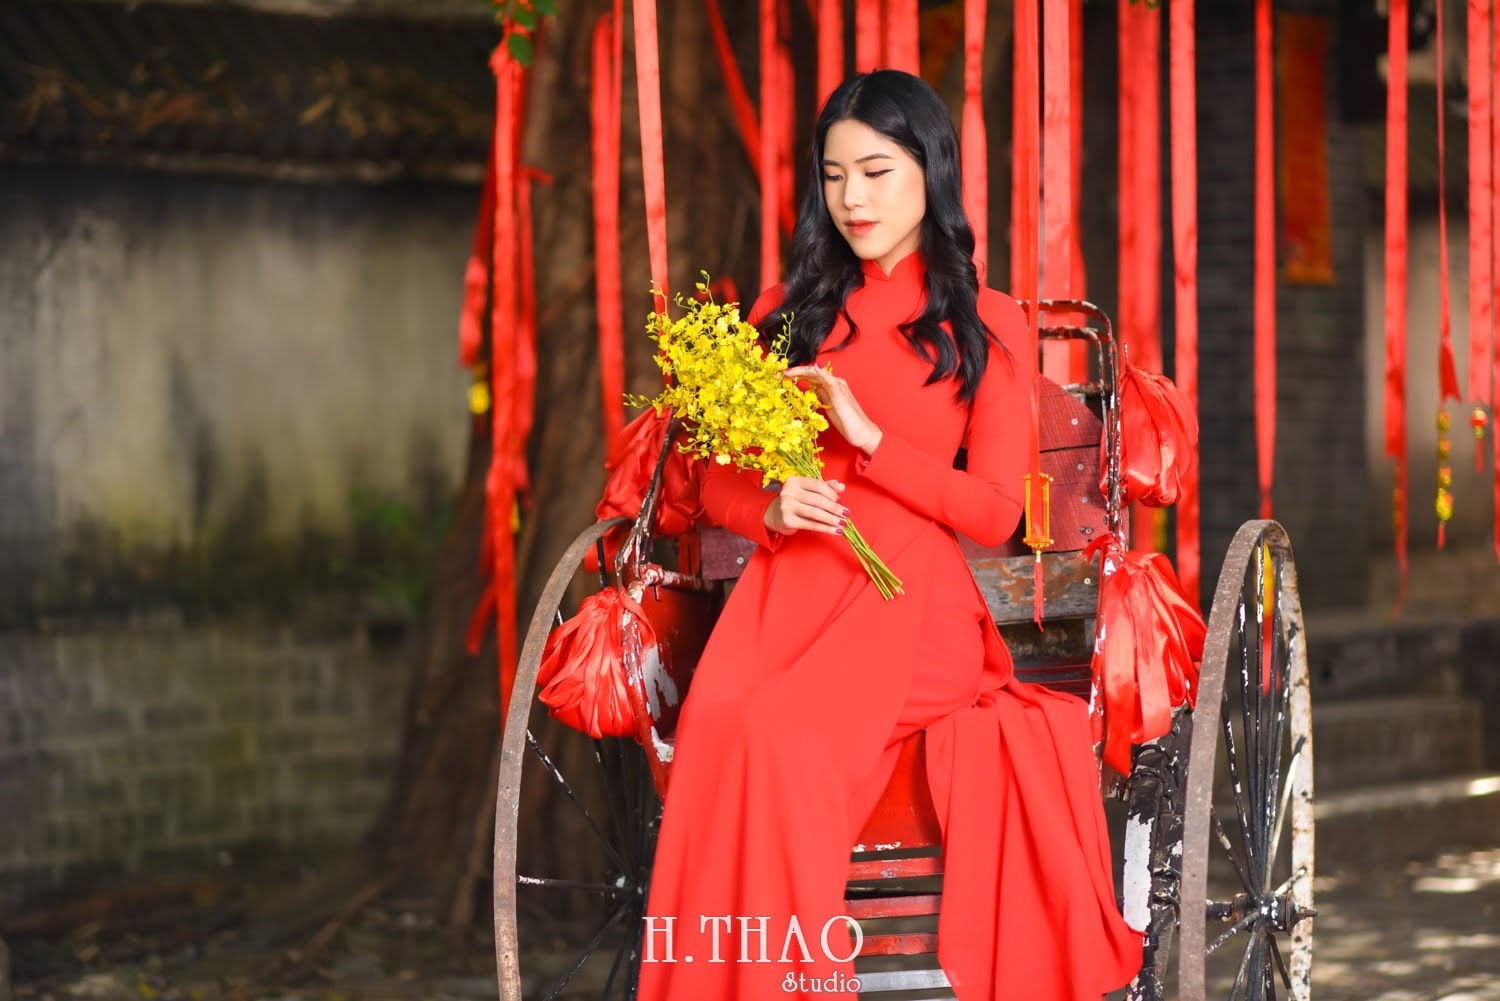 Ao dai alibaba 6 min - Top 40 ảnh áo dài chụp với Hoa đào, hoa mai tết tuyệt đẹp- HThao Studio